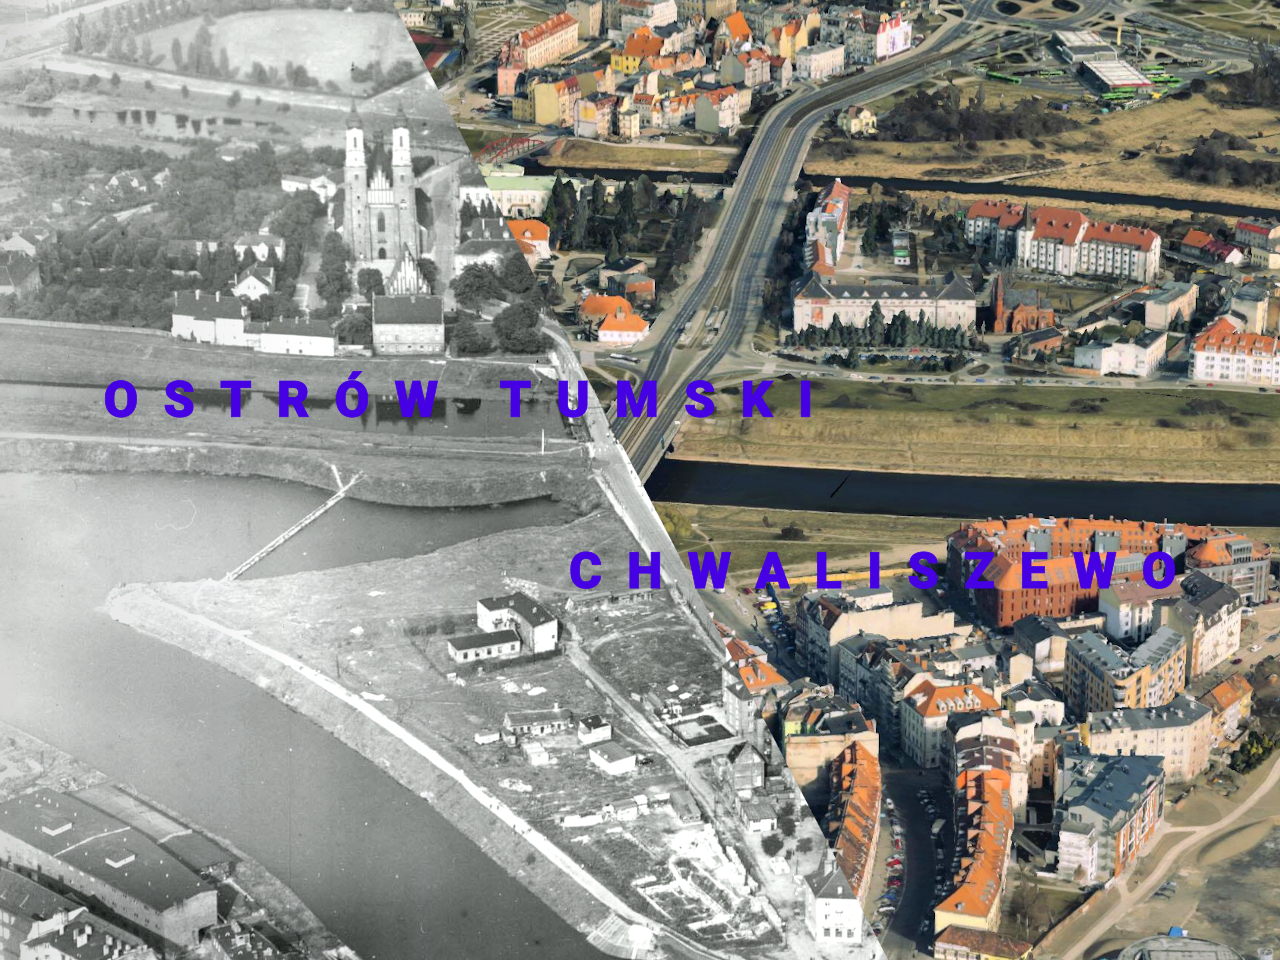 Chwaliszewo i Warta, w tle Ostrów Tumski. Zdjęcie z ~1960 roku i 2015. Źródło: CYRYL, Google Earth